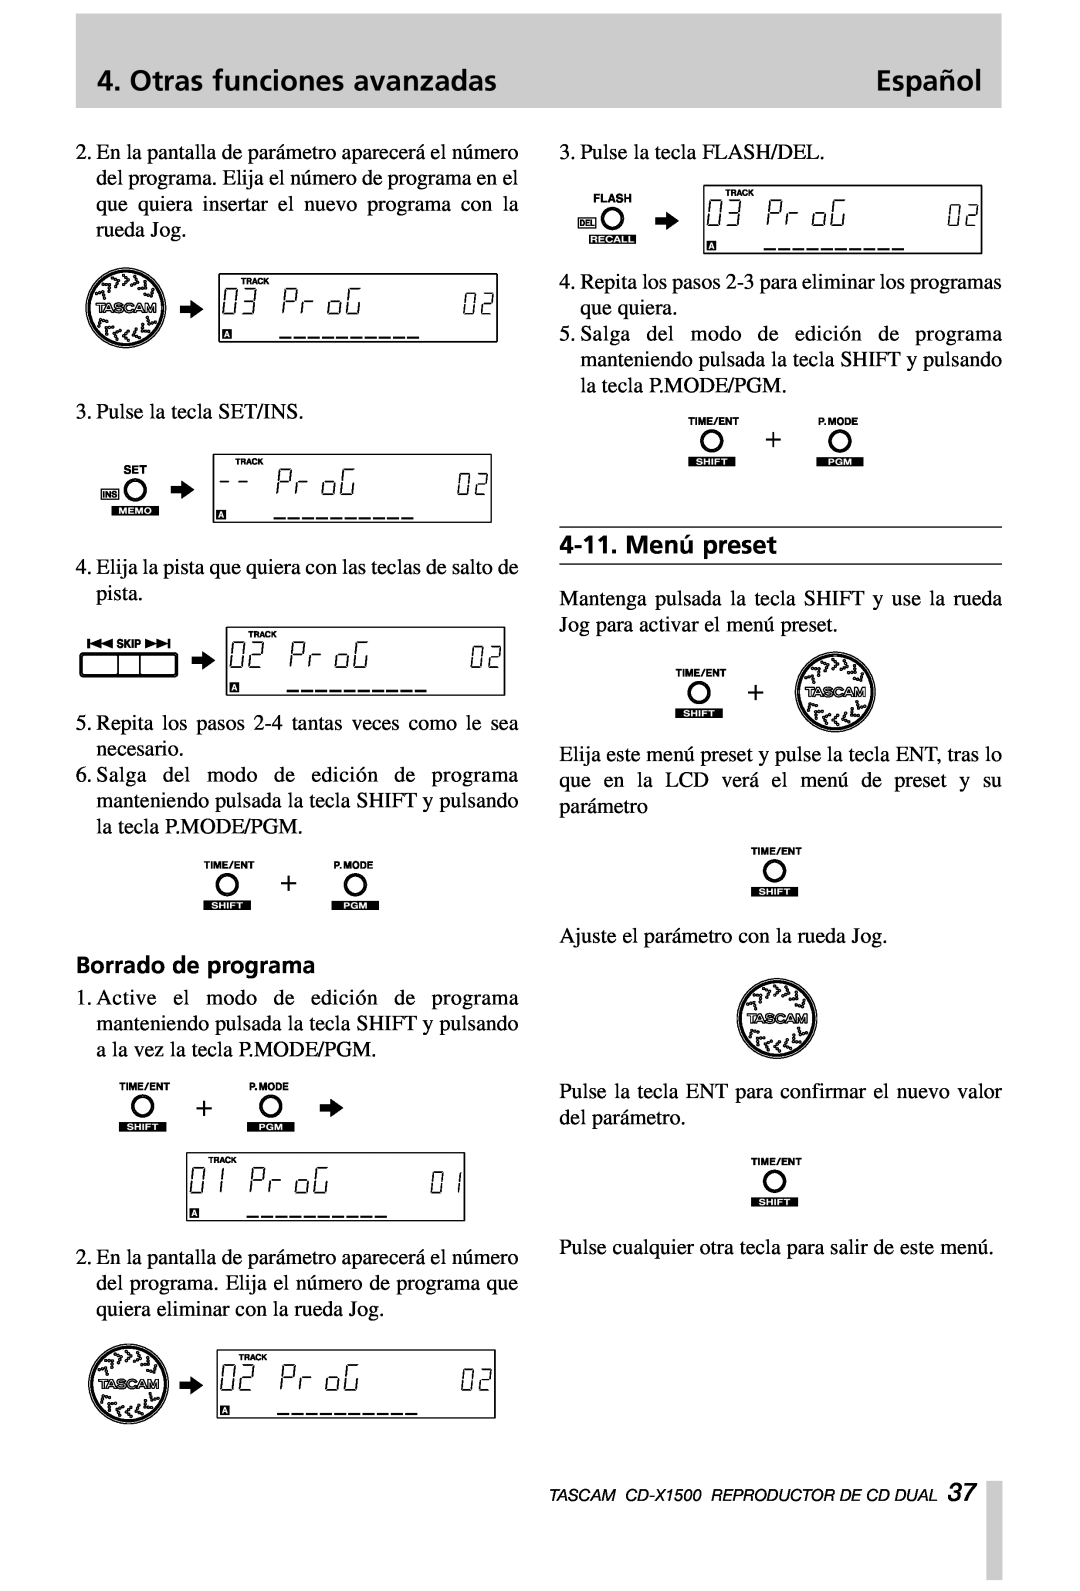 Tascam CD-X1500 owner manual Menú preset, Borrado de programa, Otras funciones avanzadas, Español 